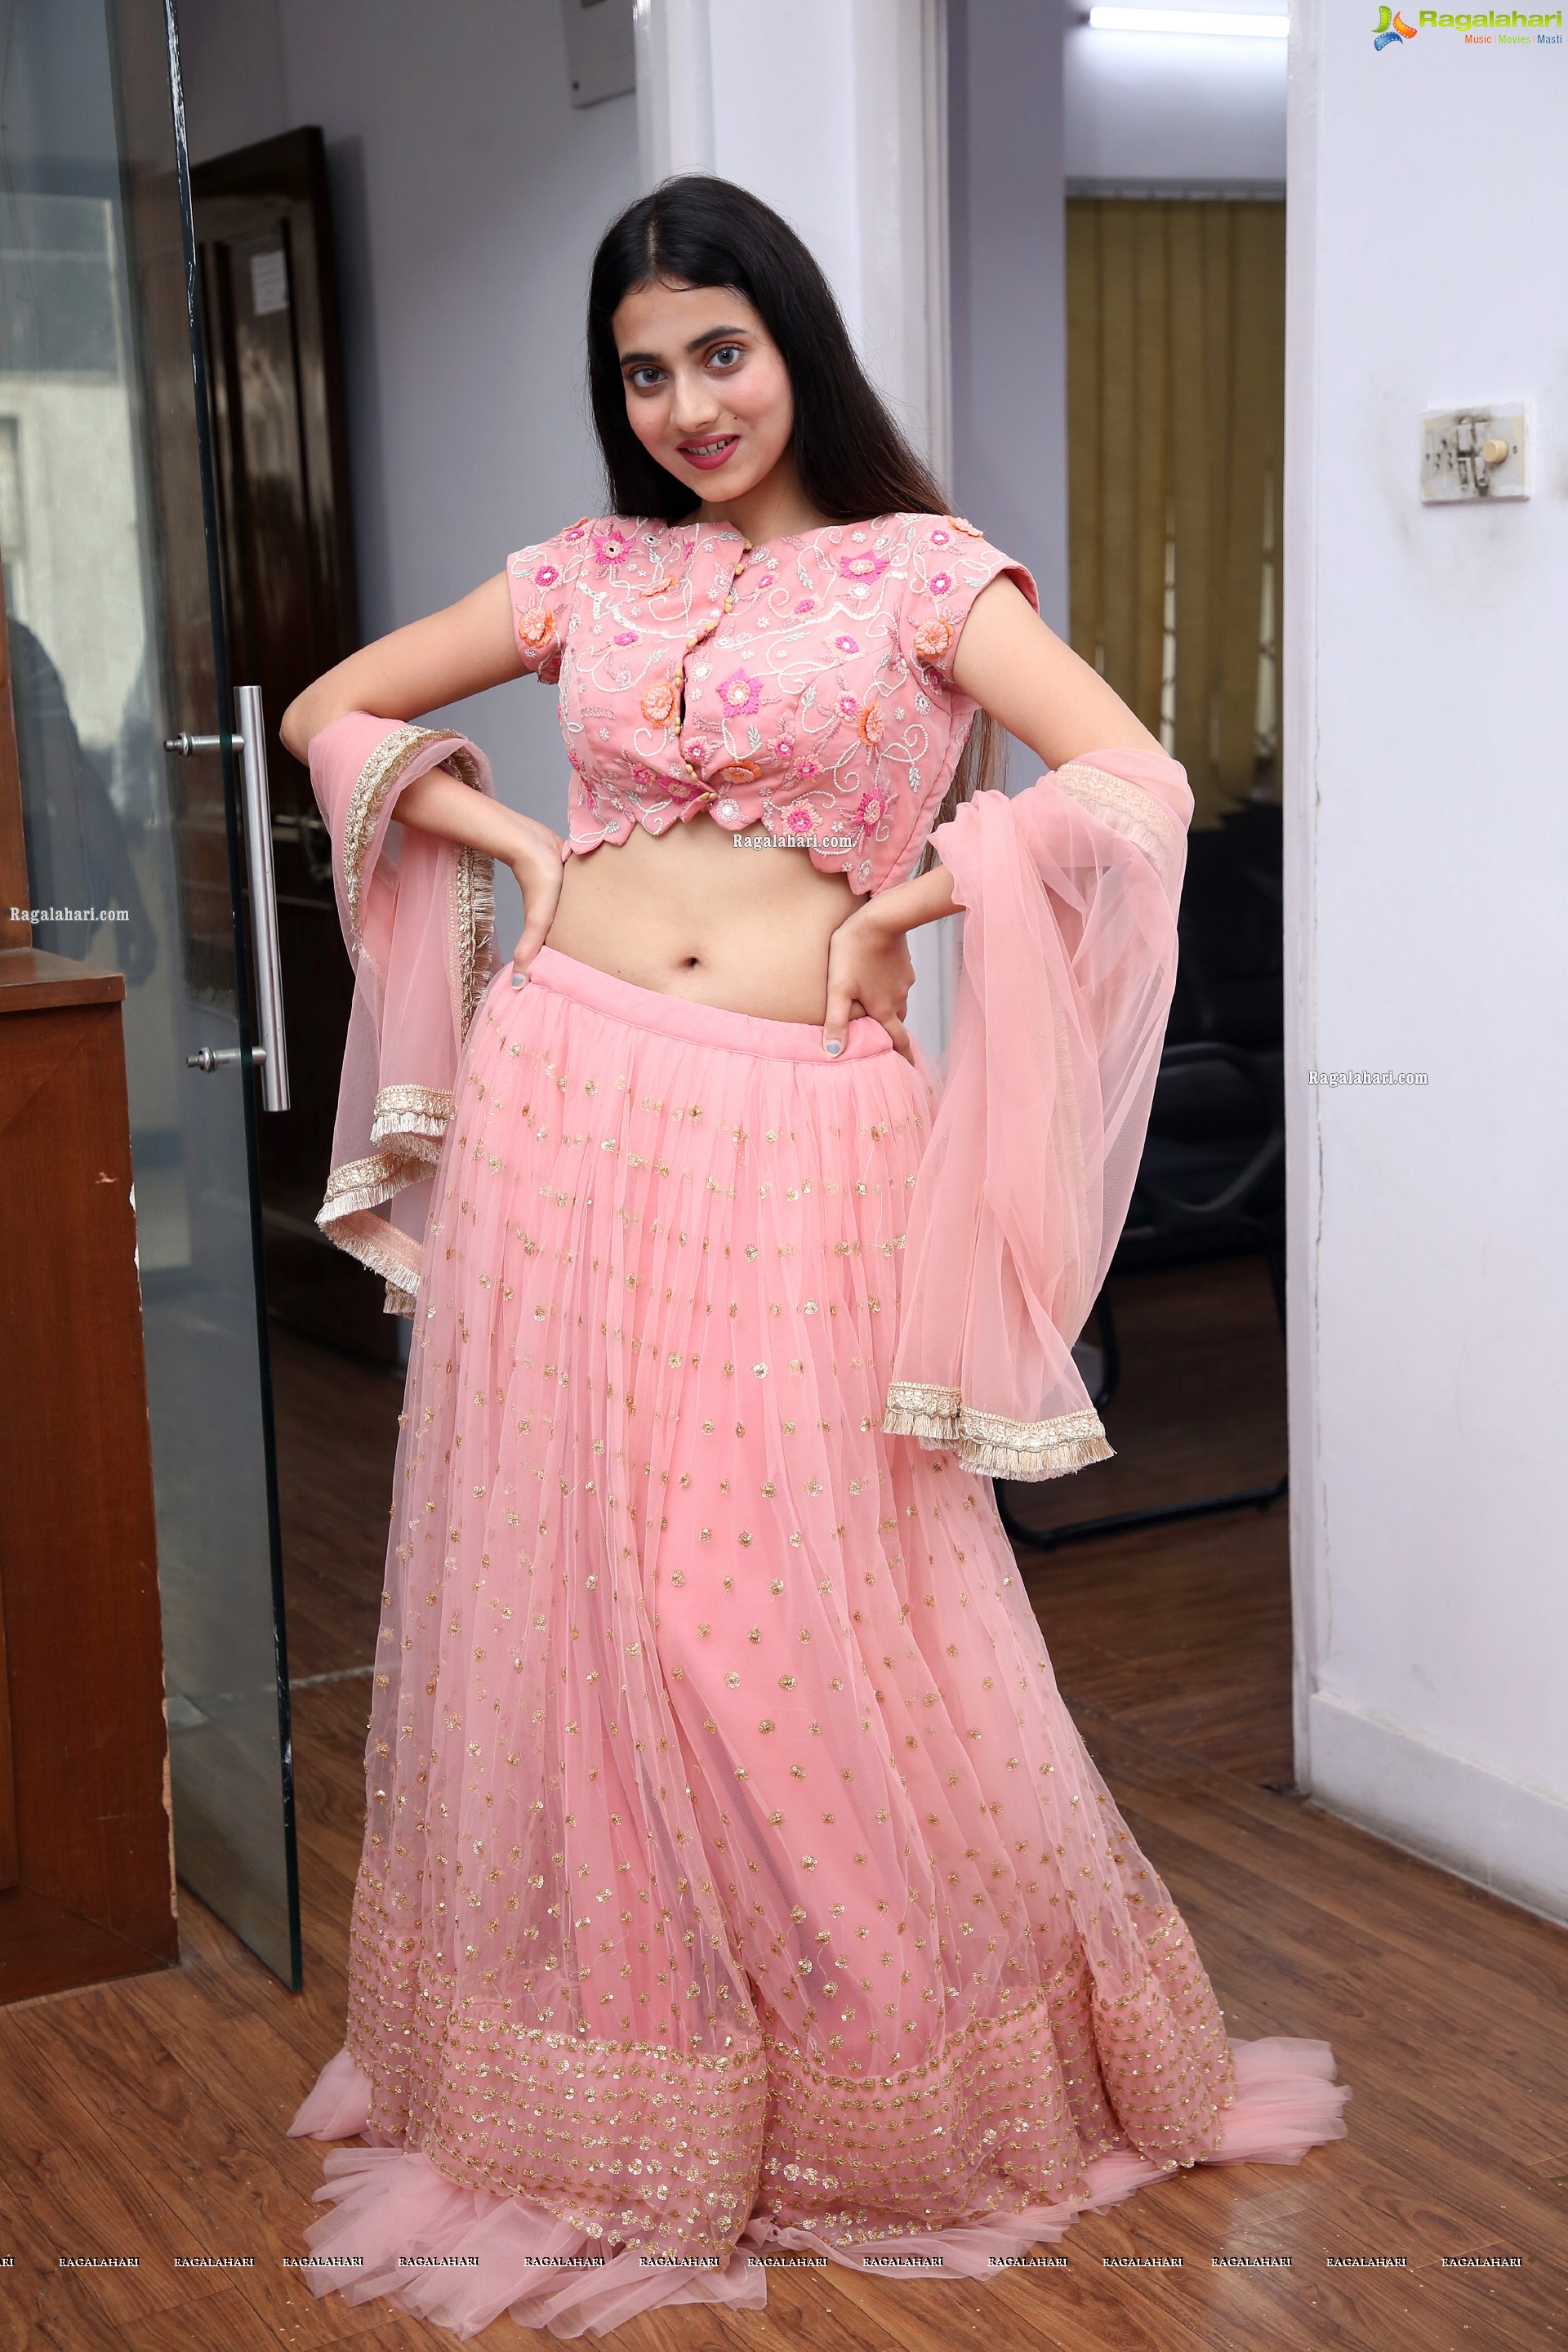 Dimple Thakur in Pink Designer Lehenga Choli, HD Photo Gallery